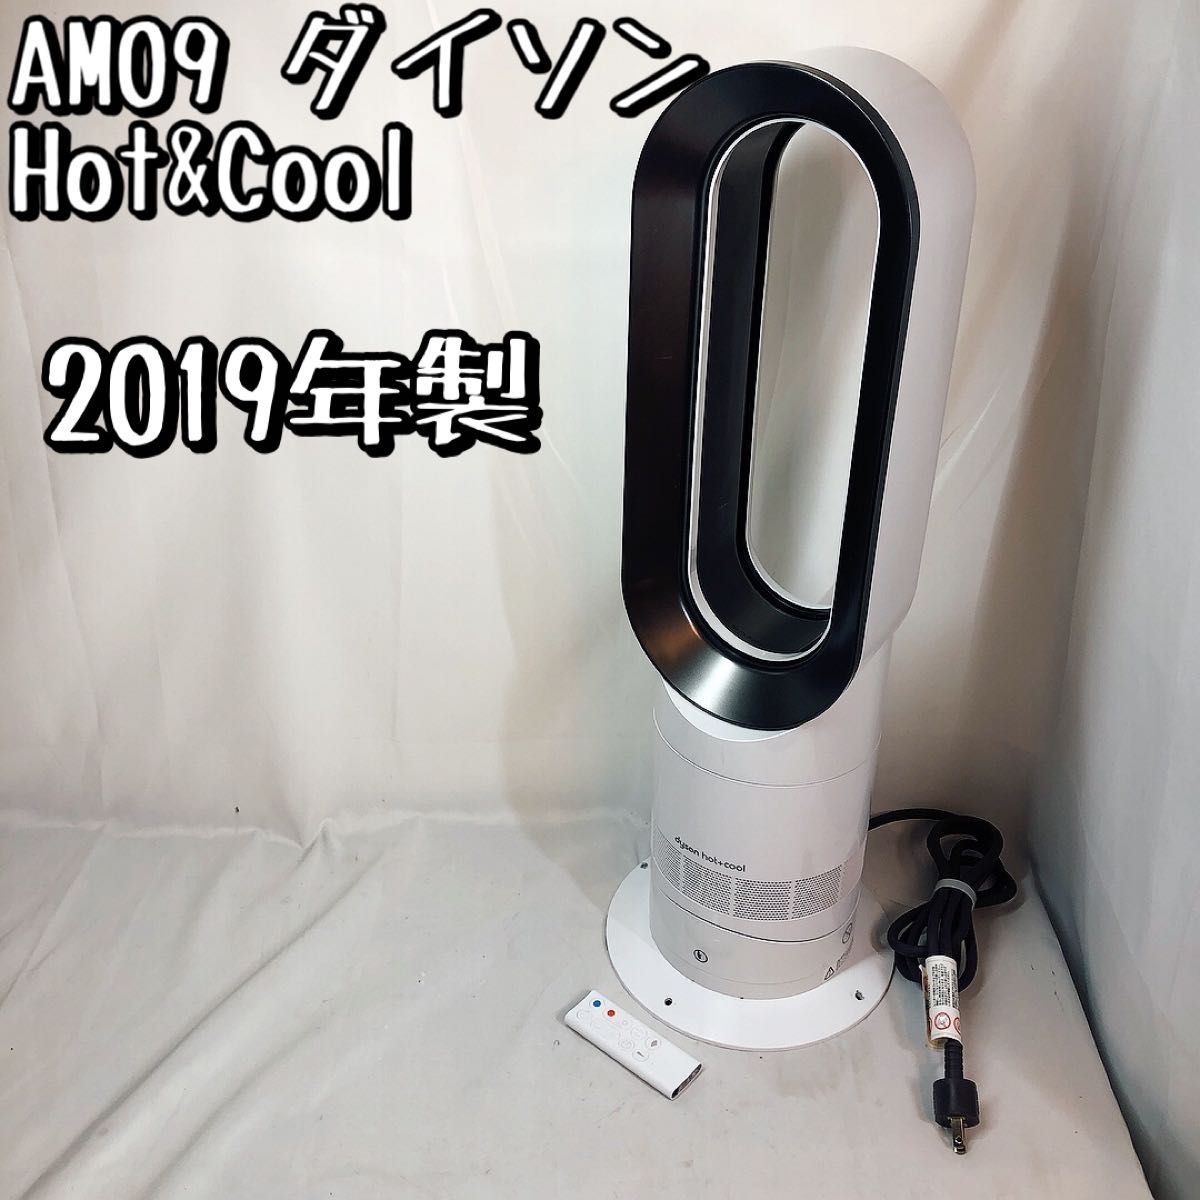 AM09 ダイソン ファンヒーター Hot&Cool ホワイト2019年製 dyson セラミックファンヒーター 扇風機 リモコン